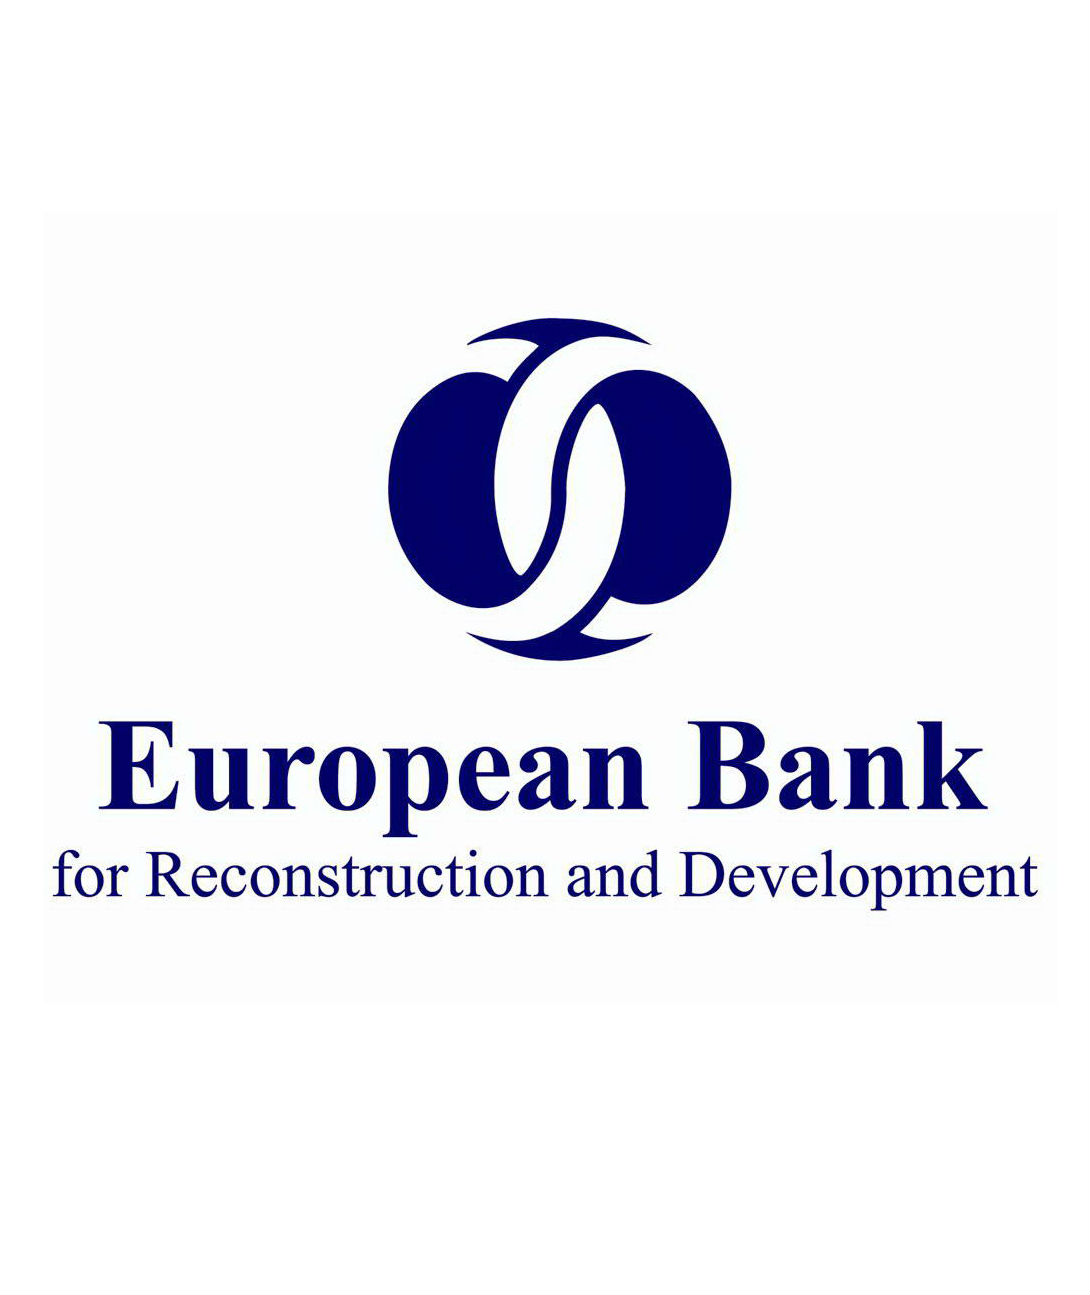 歐洲復興開發銀行(歐洲銀行)